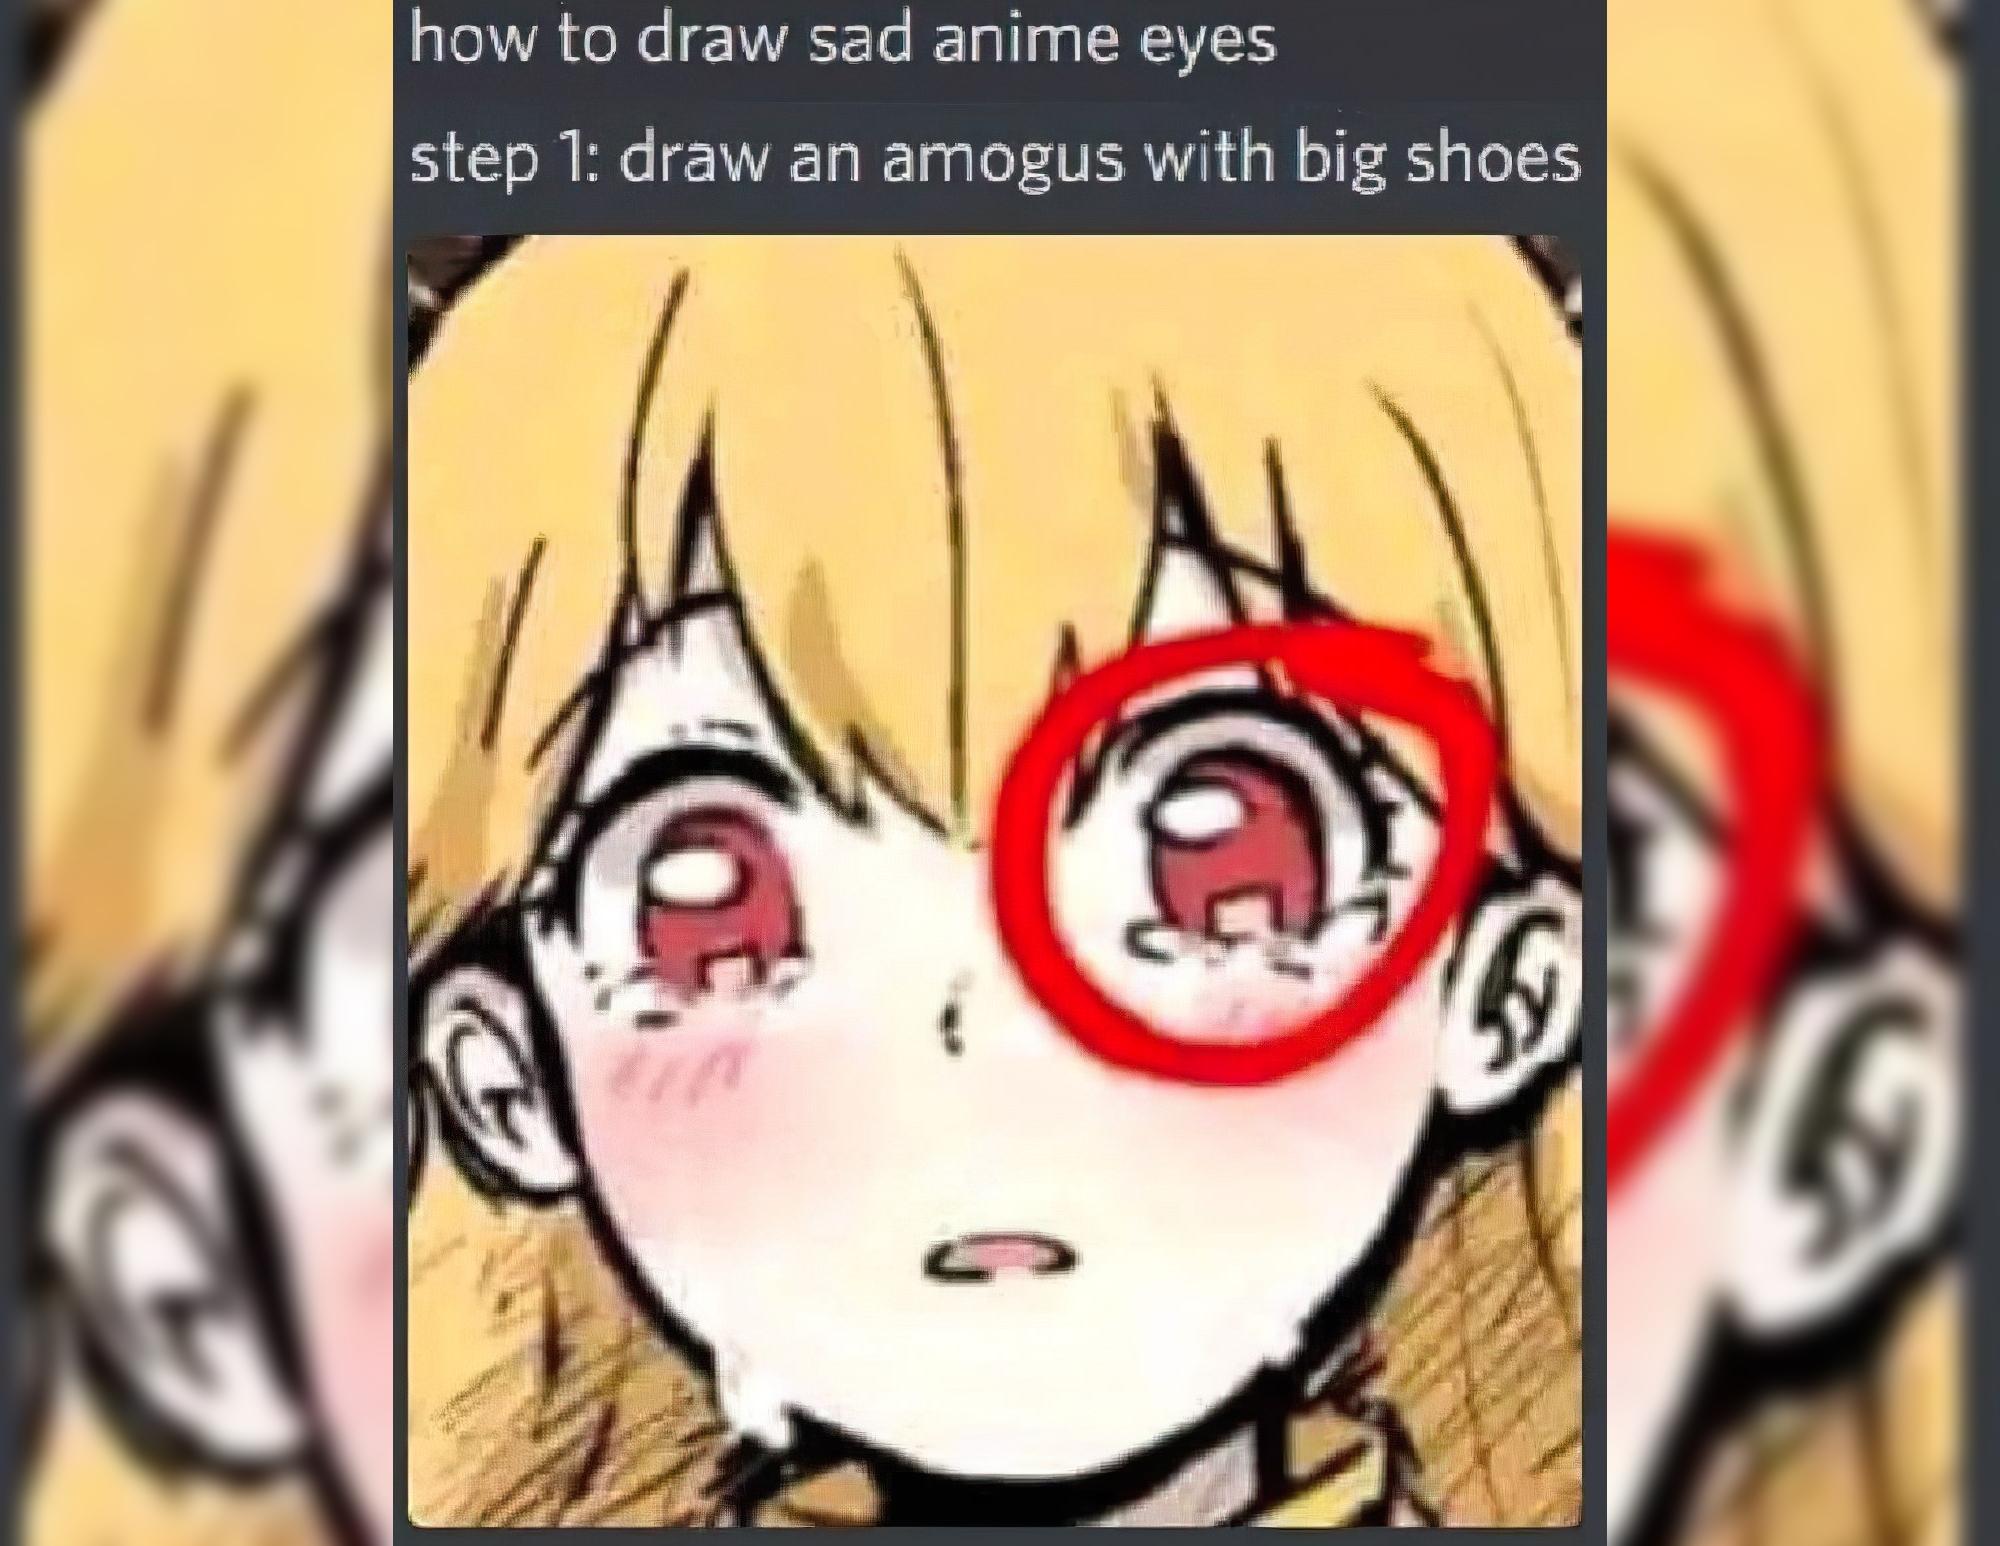 twitter artist drew among us in sad anime eyes  YouTube